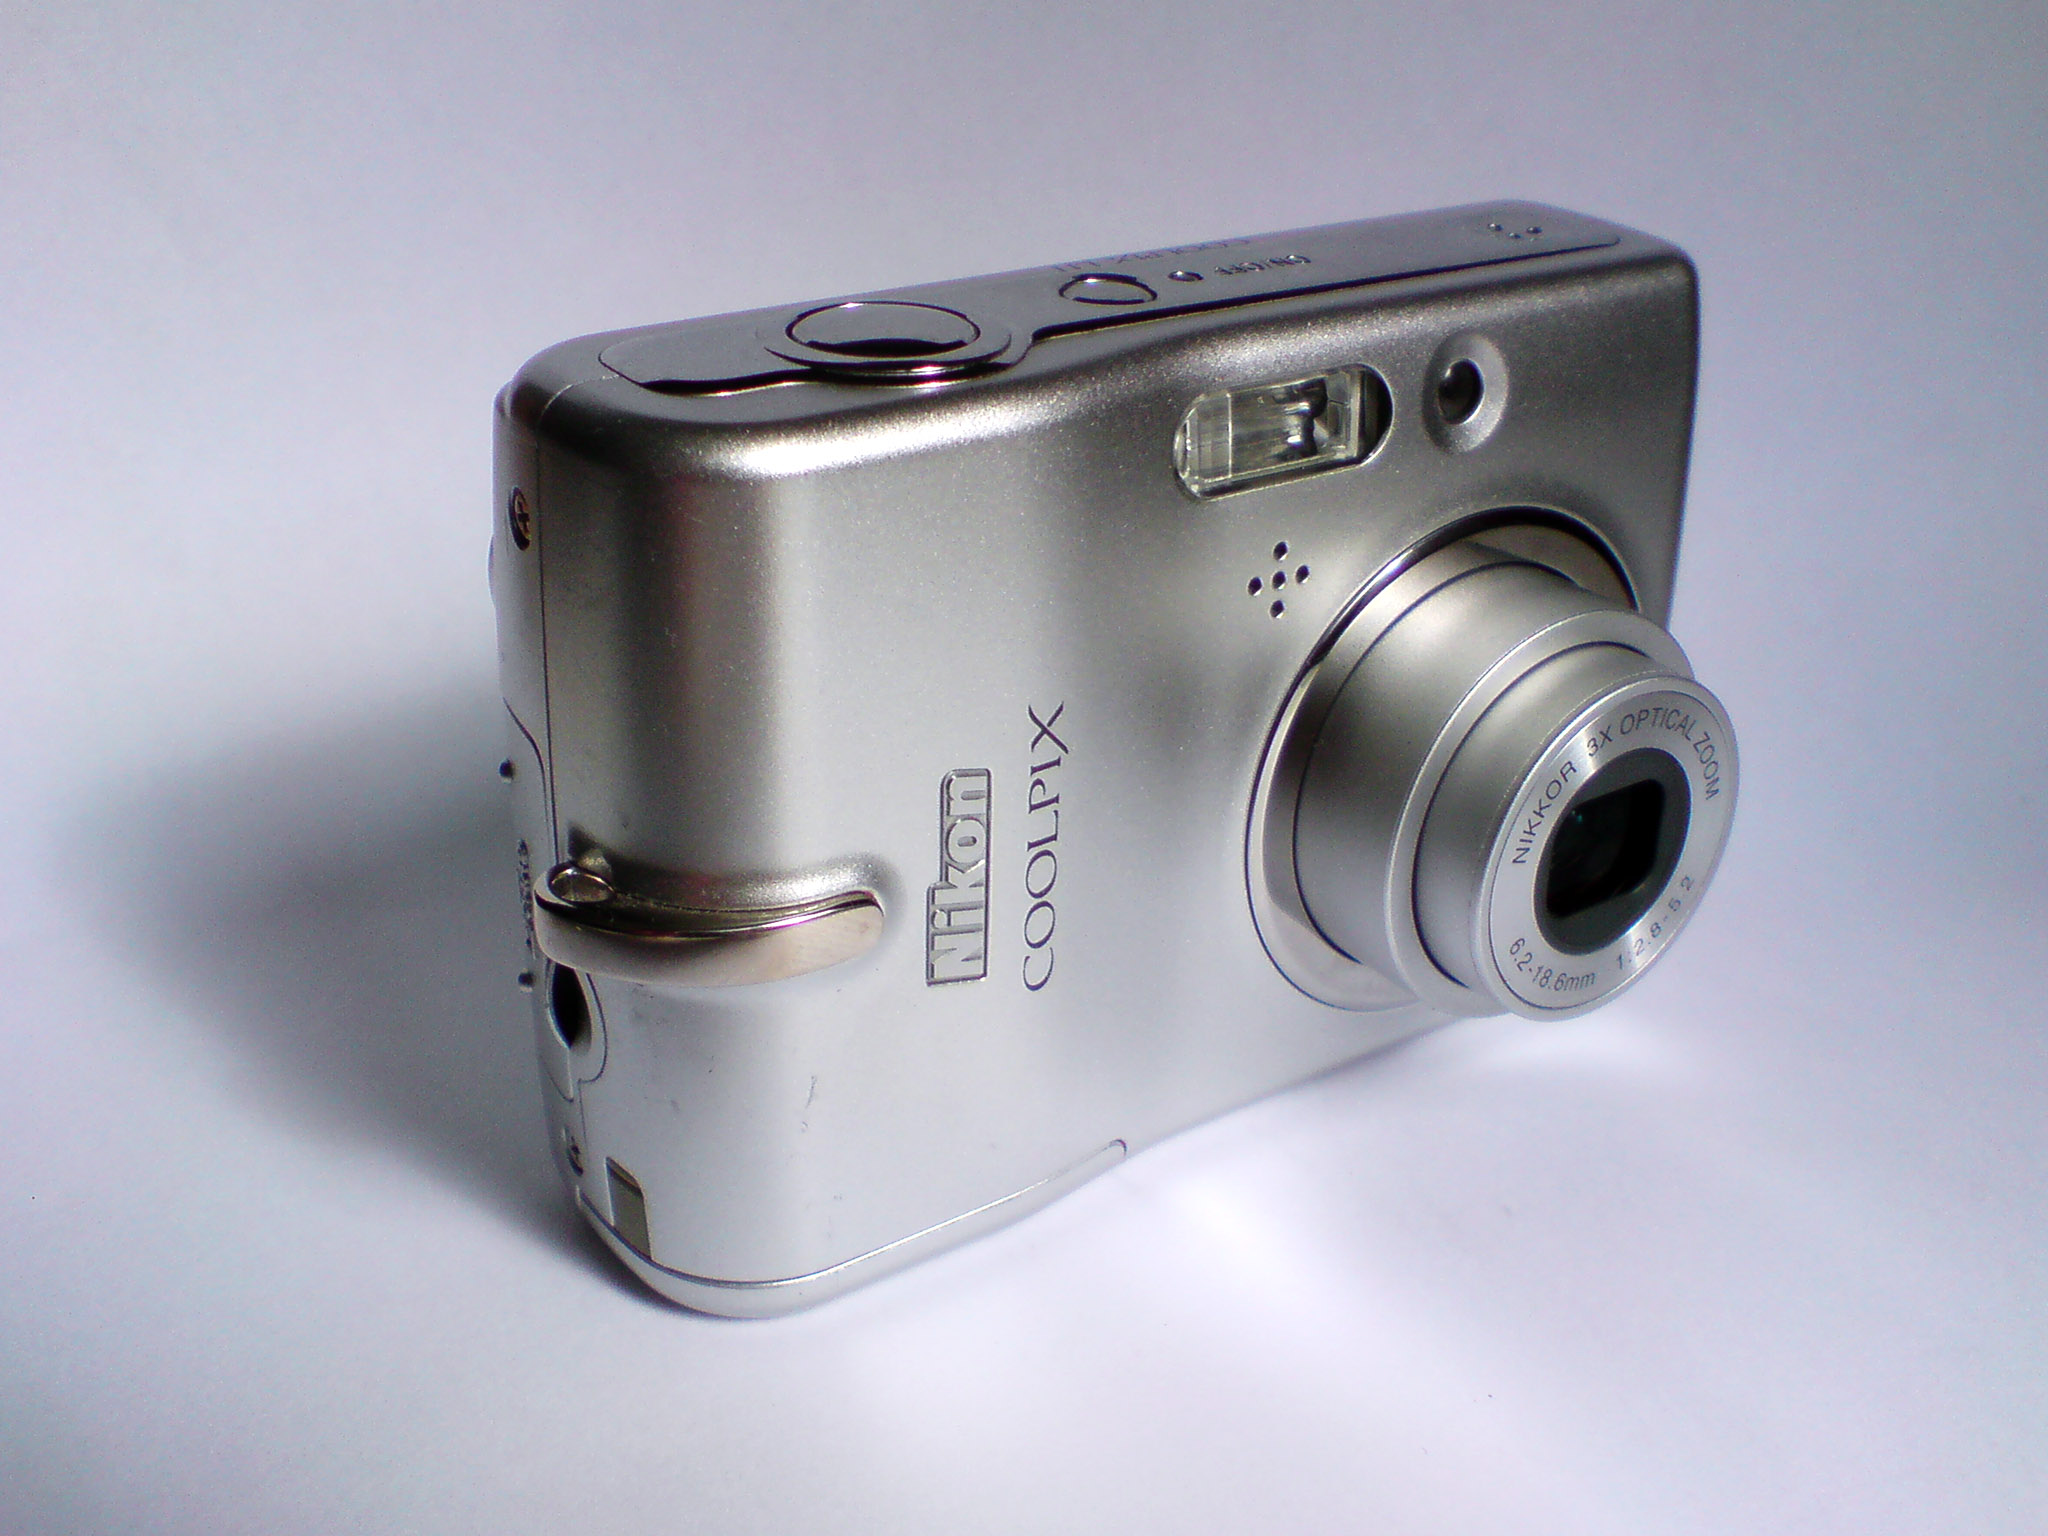 Nikon Coolpix L11 - Wikipedia